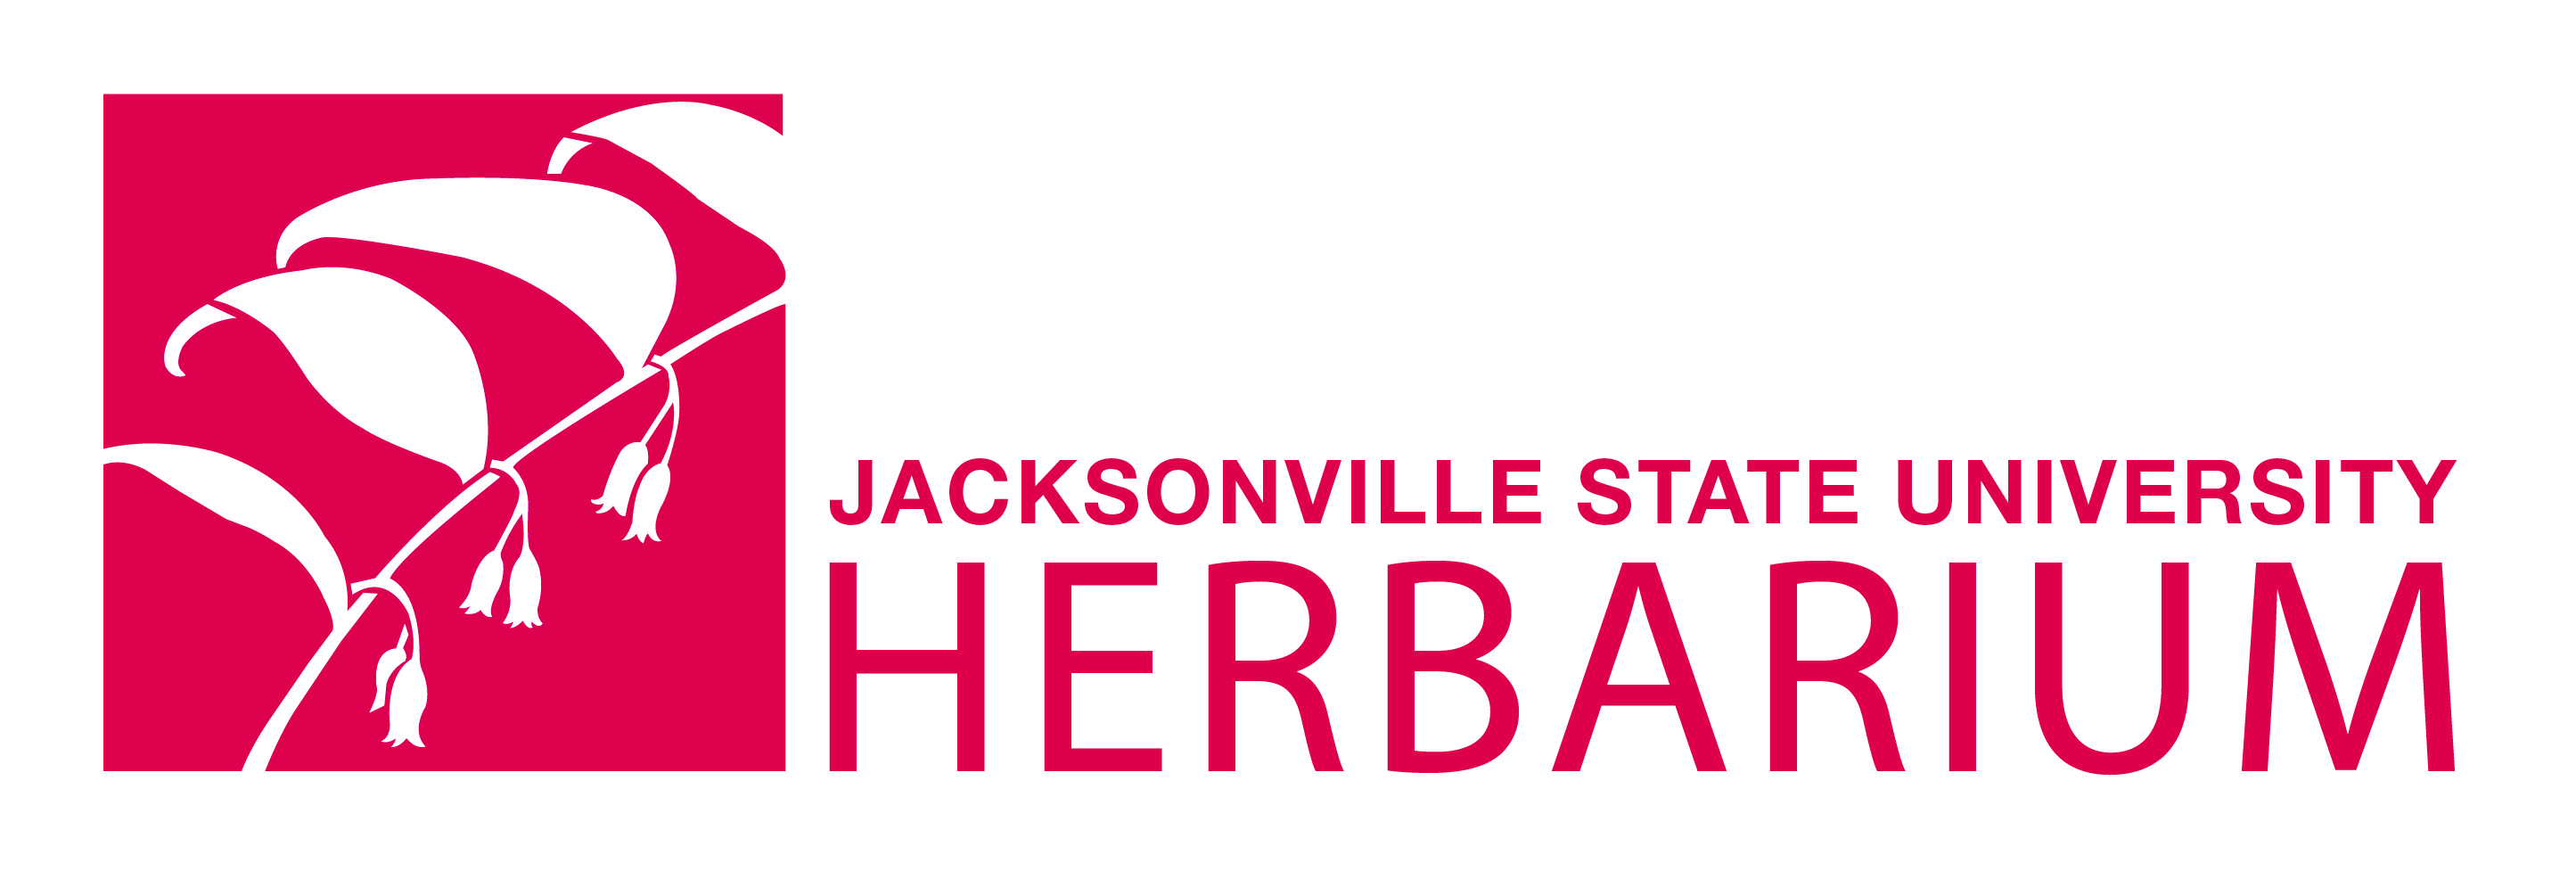 herbarium logo